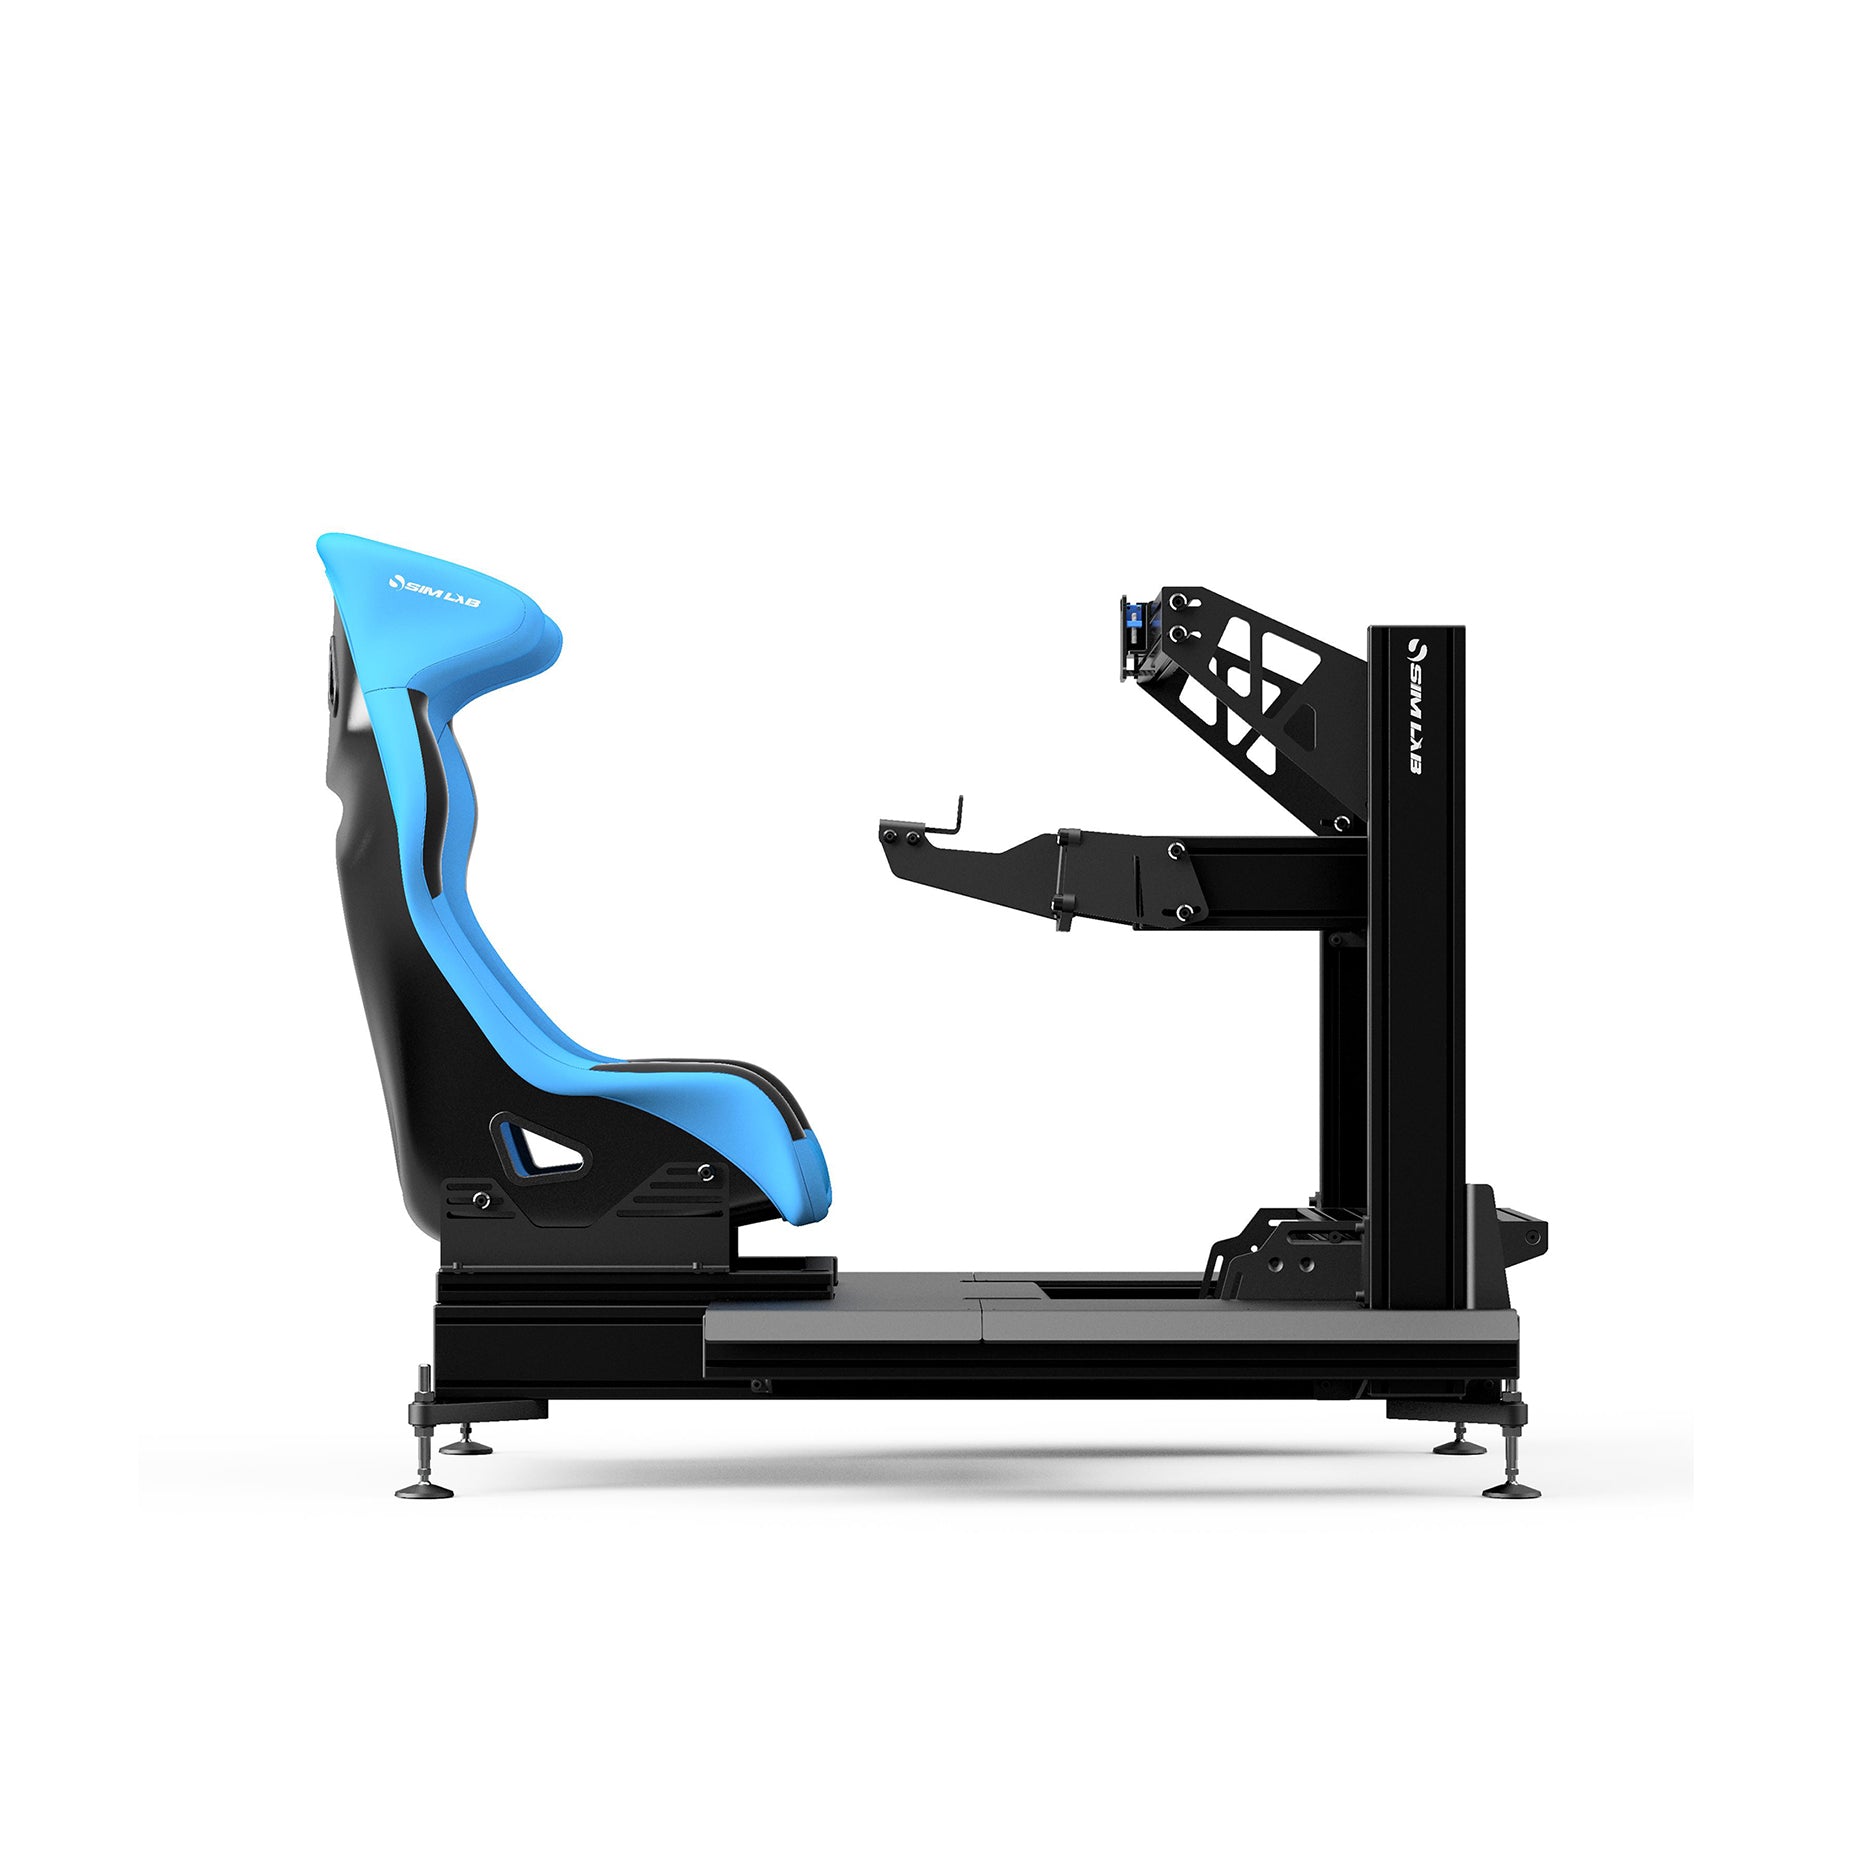 GT1-EVO sim racing cockpit 